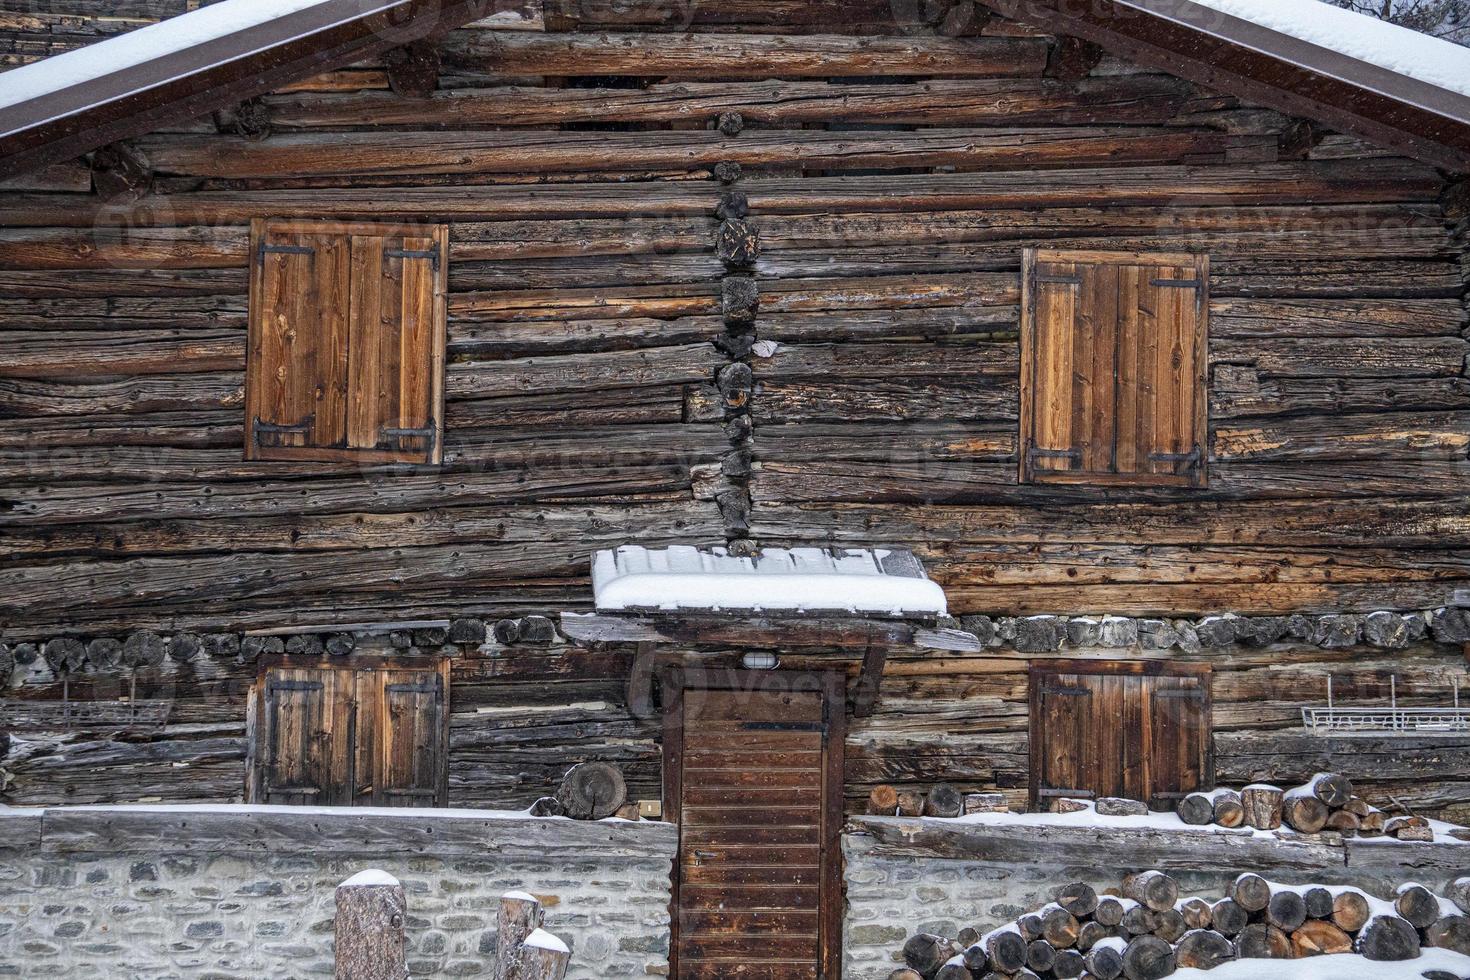 cabana de madeira coberta pela neve nas dolomitas foto